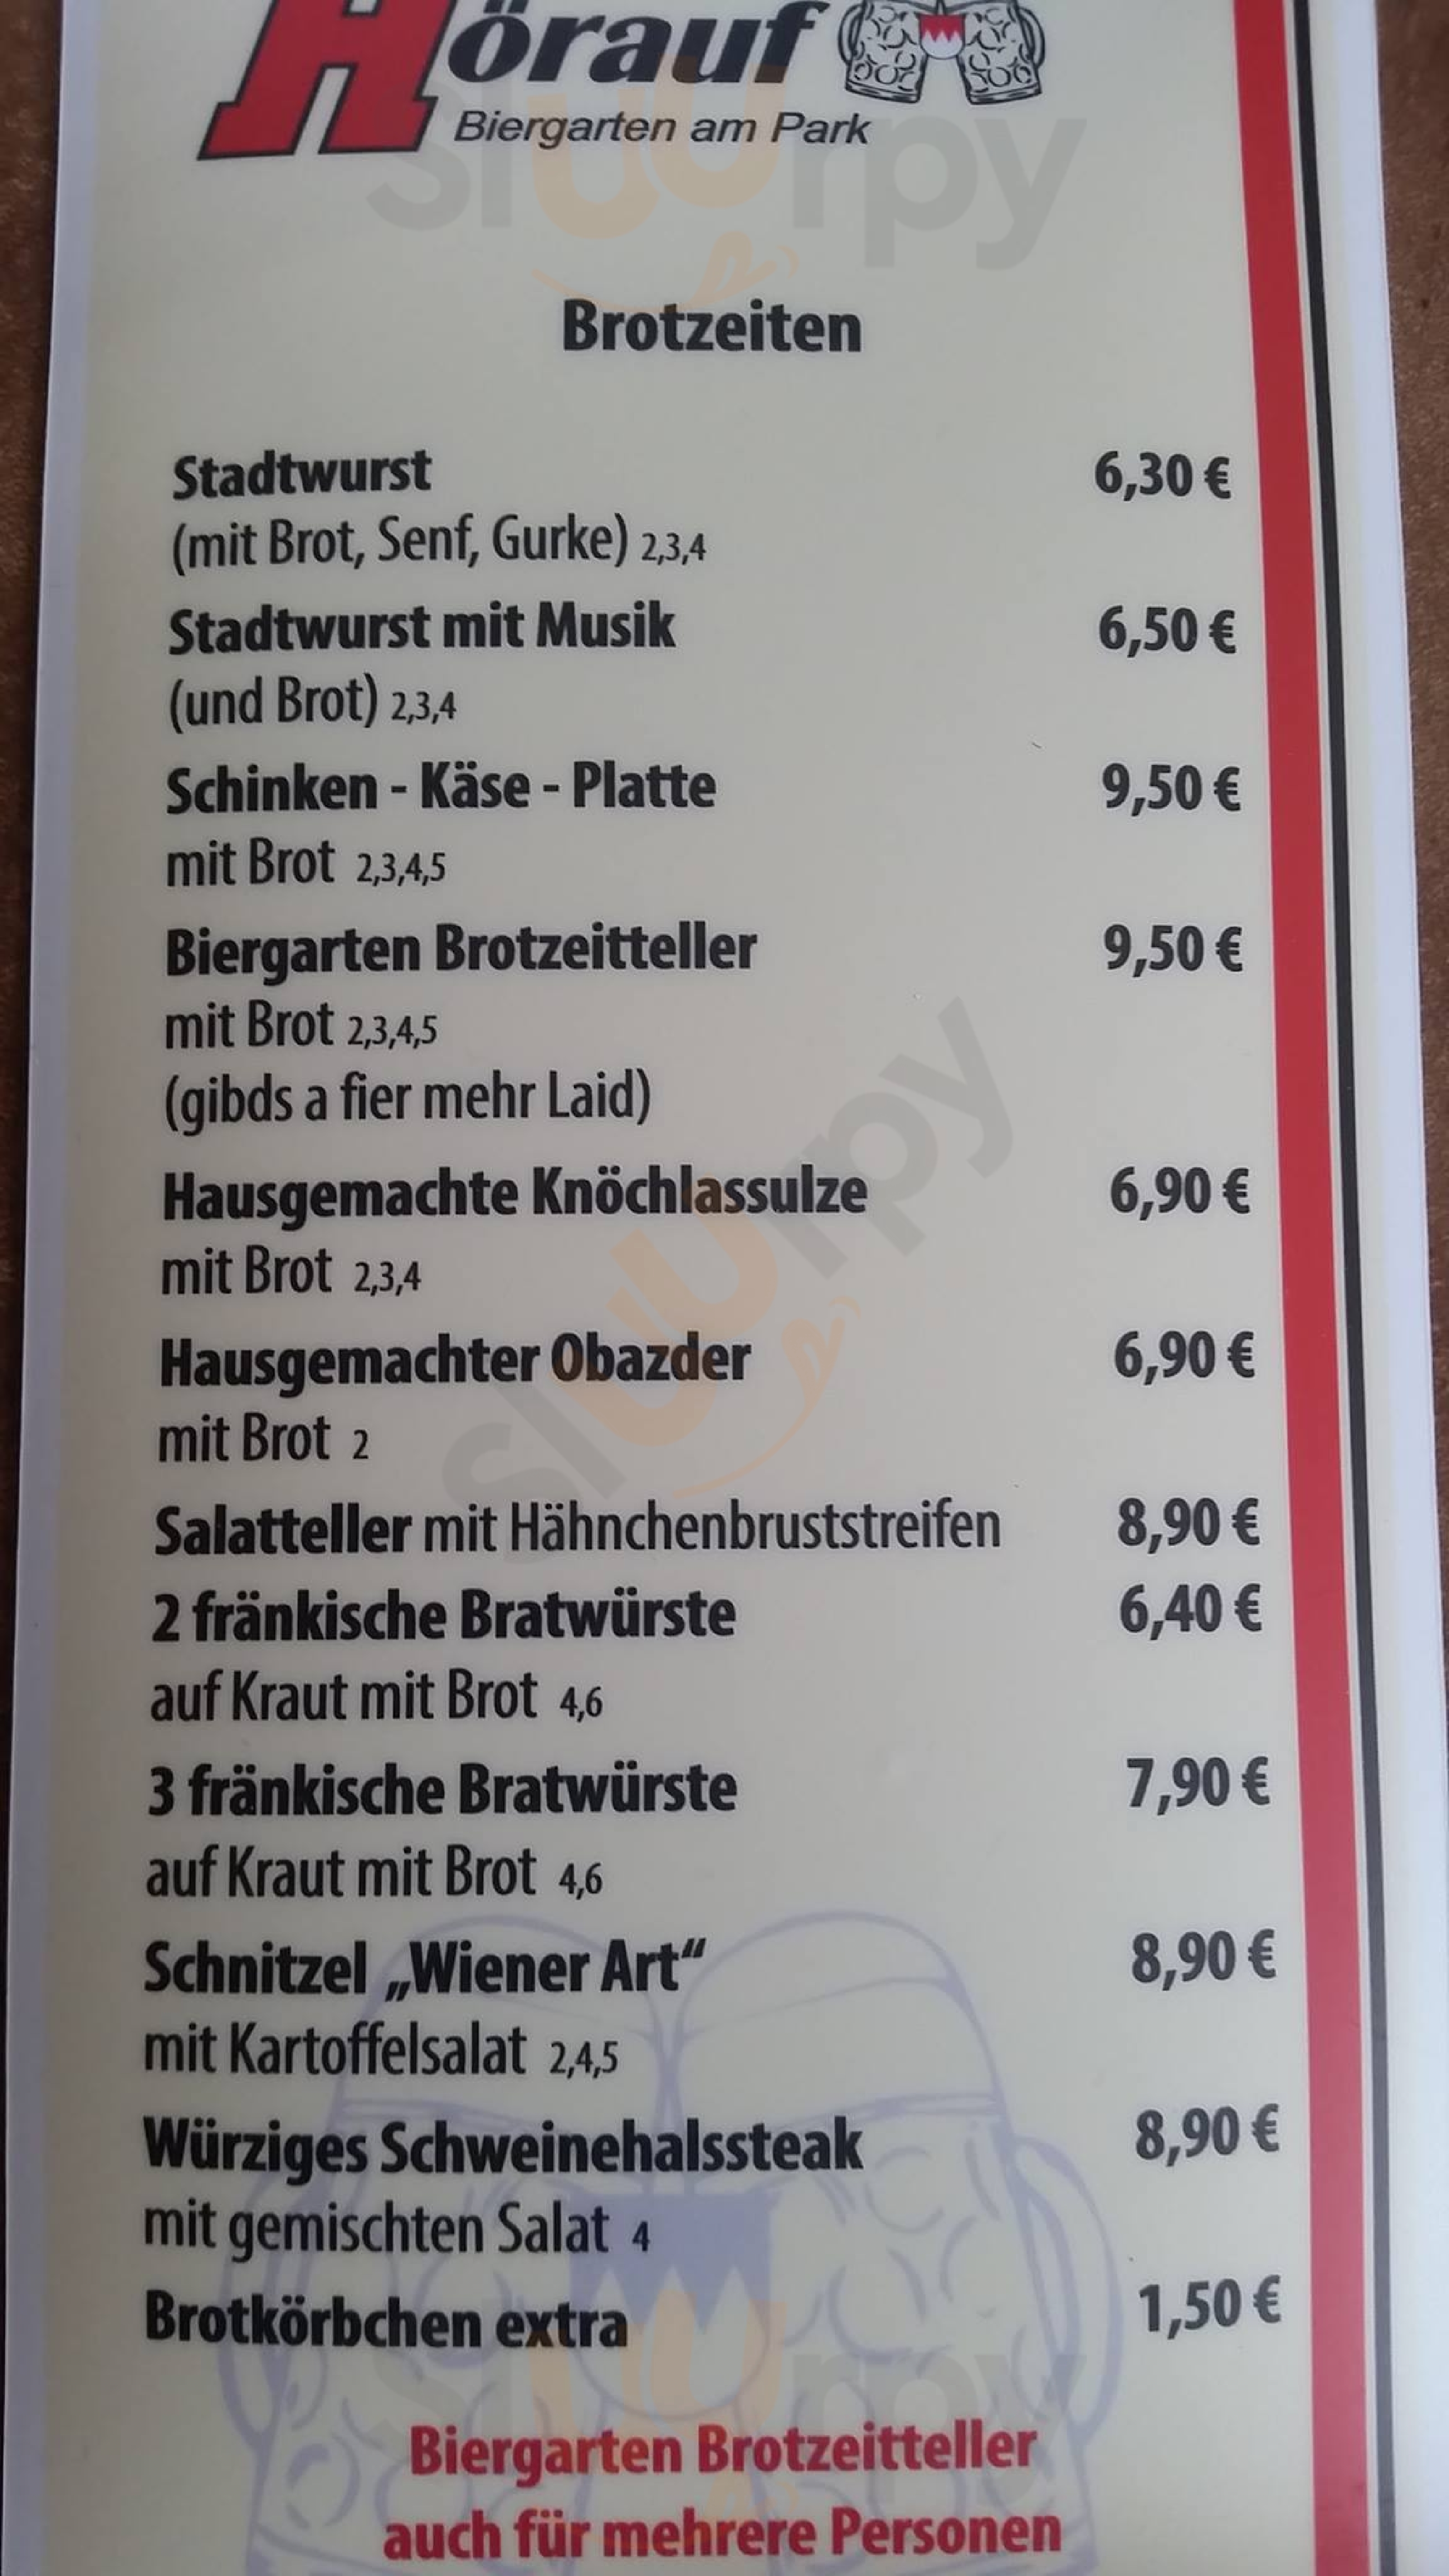 Höraufs Biergarten Schwabach Menu - 1